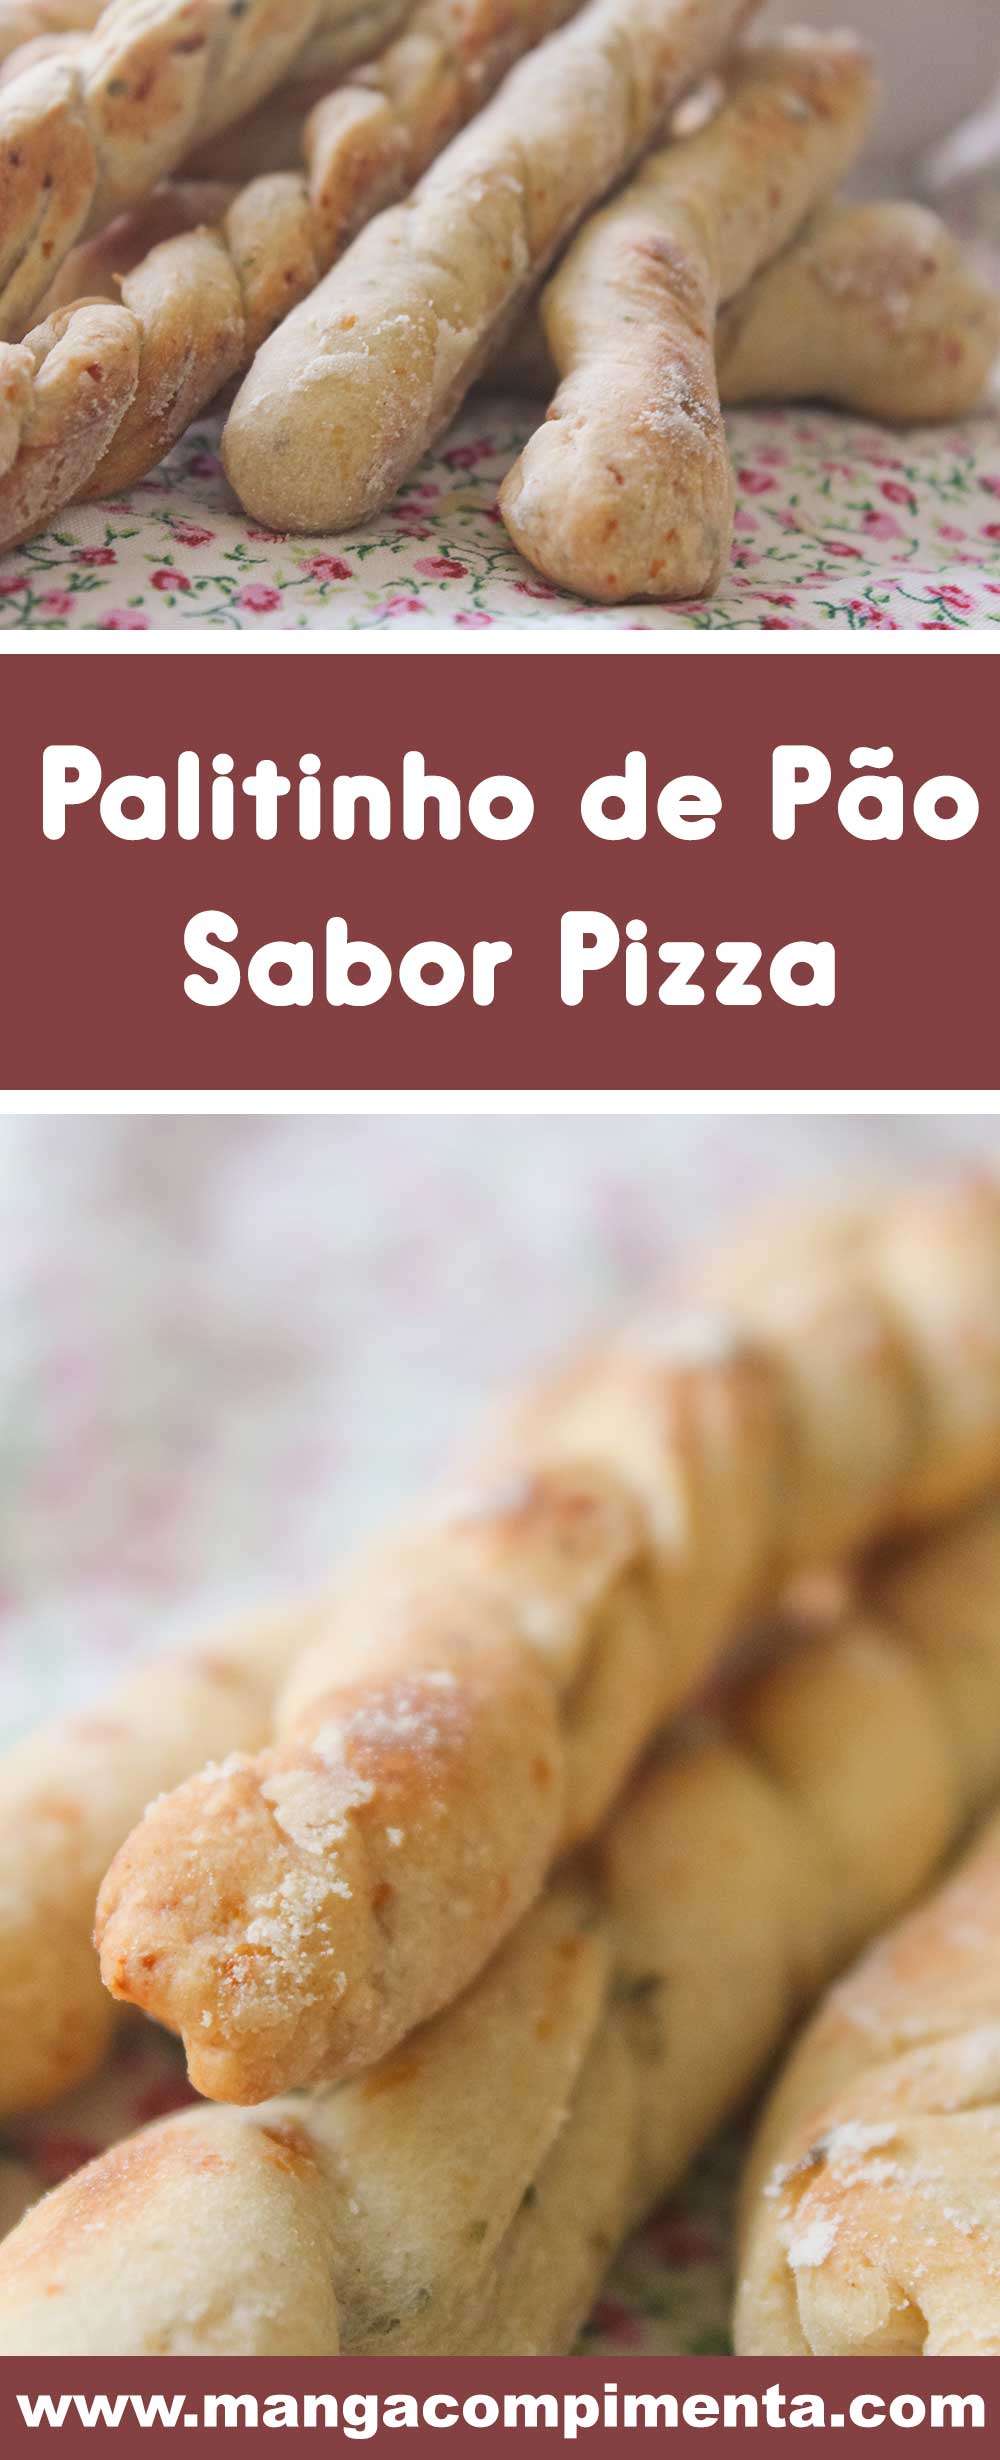 Receita de Palito de Pão Sabor Pizza - prepare para petiscar no final de semana com a família e amigos.